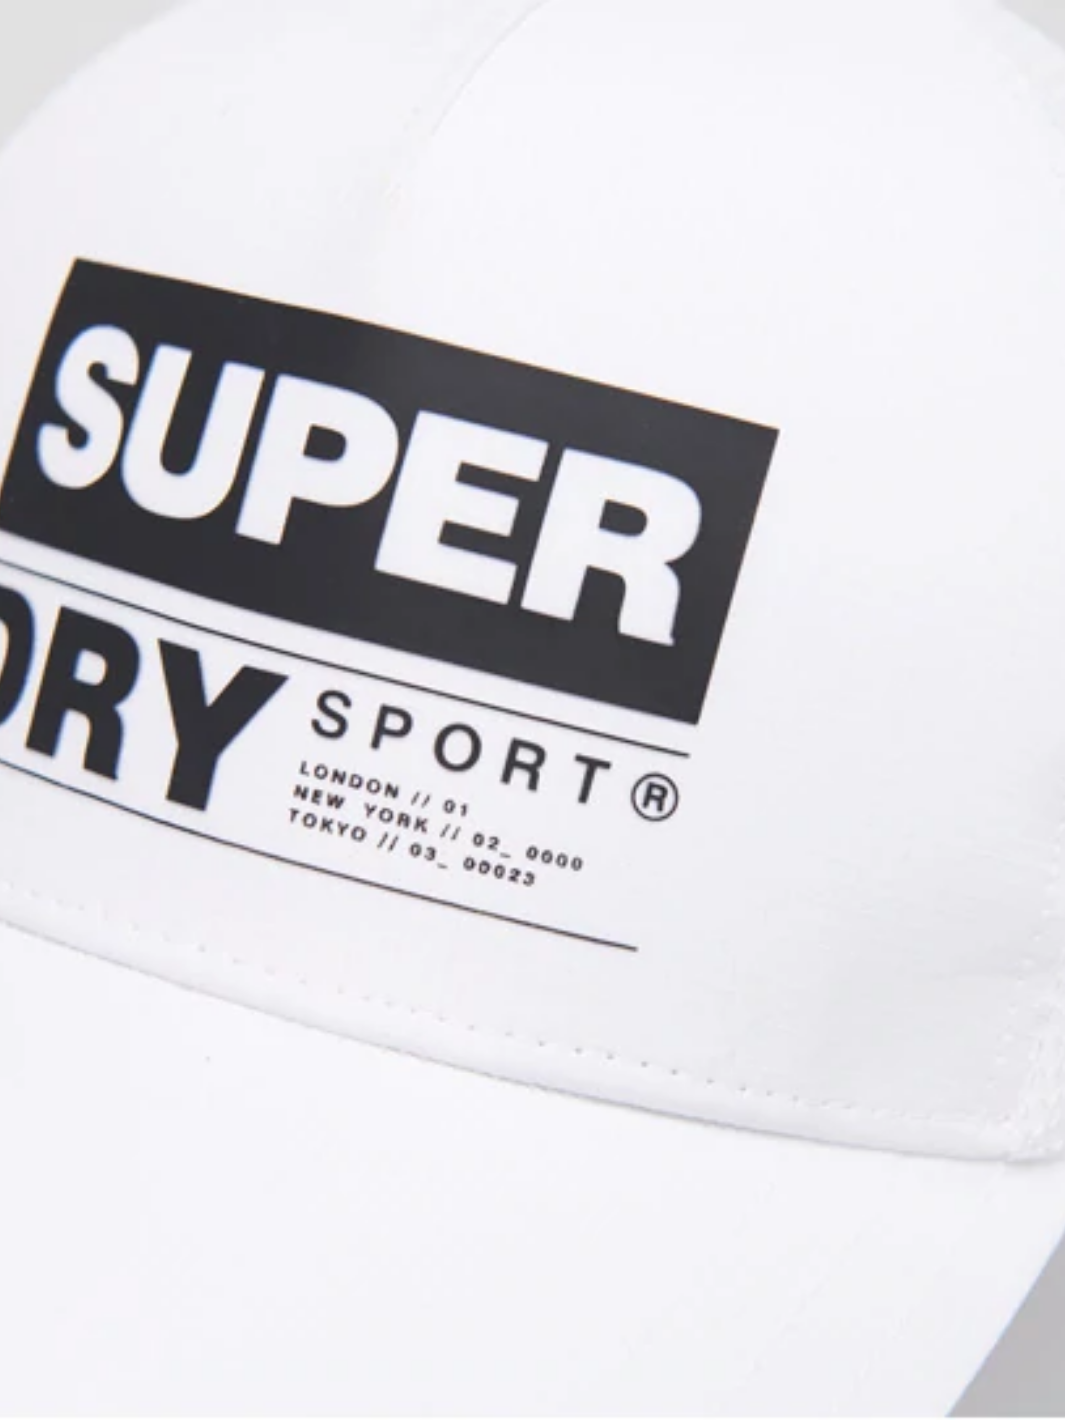 Hvid Superdry Sports Cap